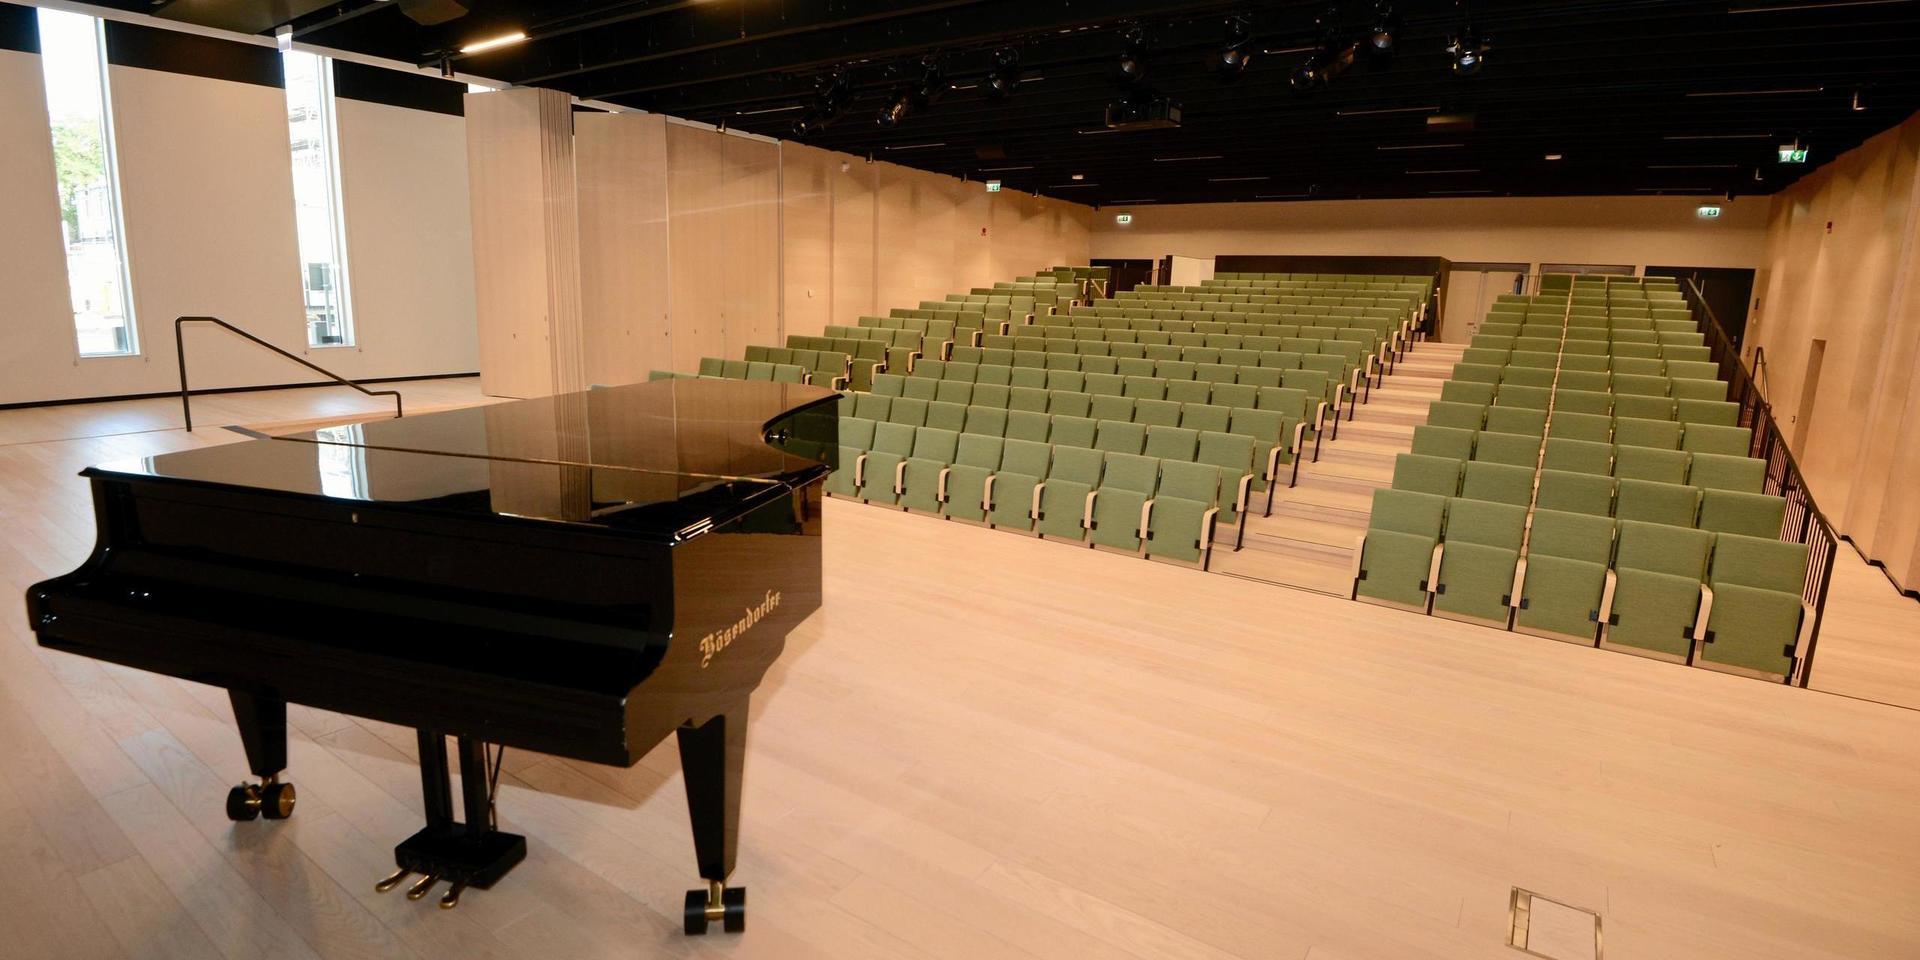 Utmärkt akustik, ljusa färger och bekväma fåtöljer är insändarskribentens omdöme om den nya konsertsalen i Argus..